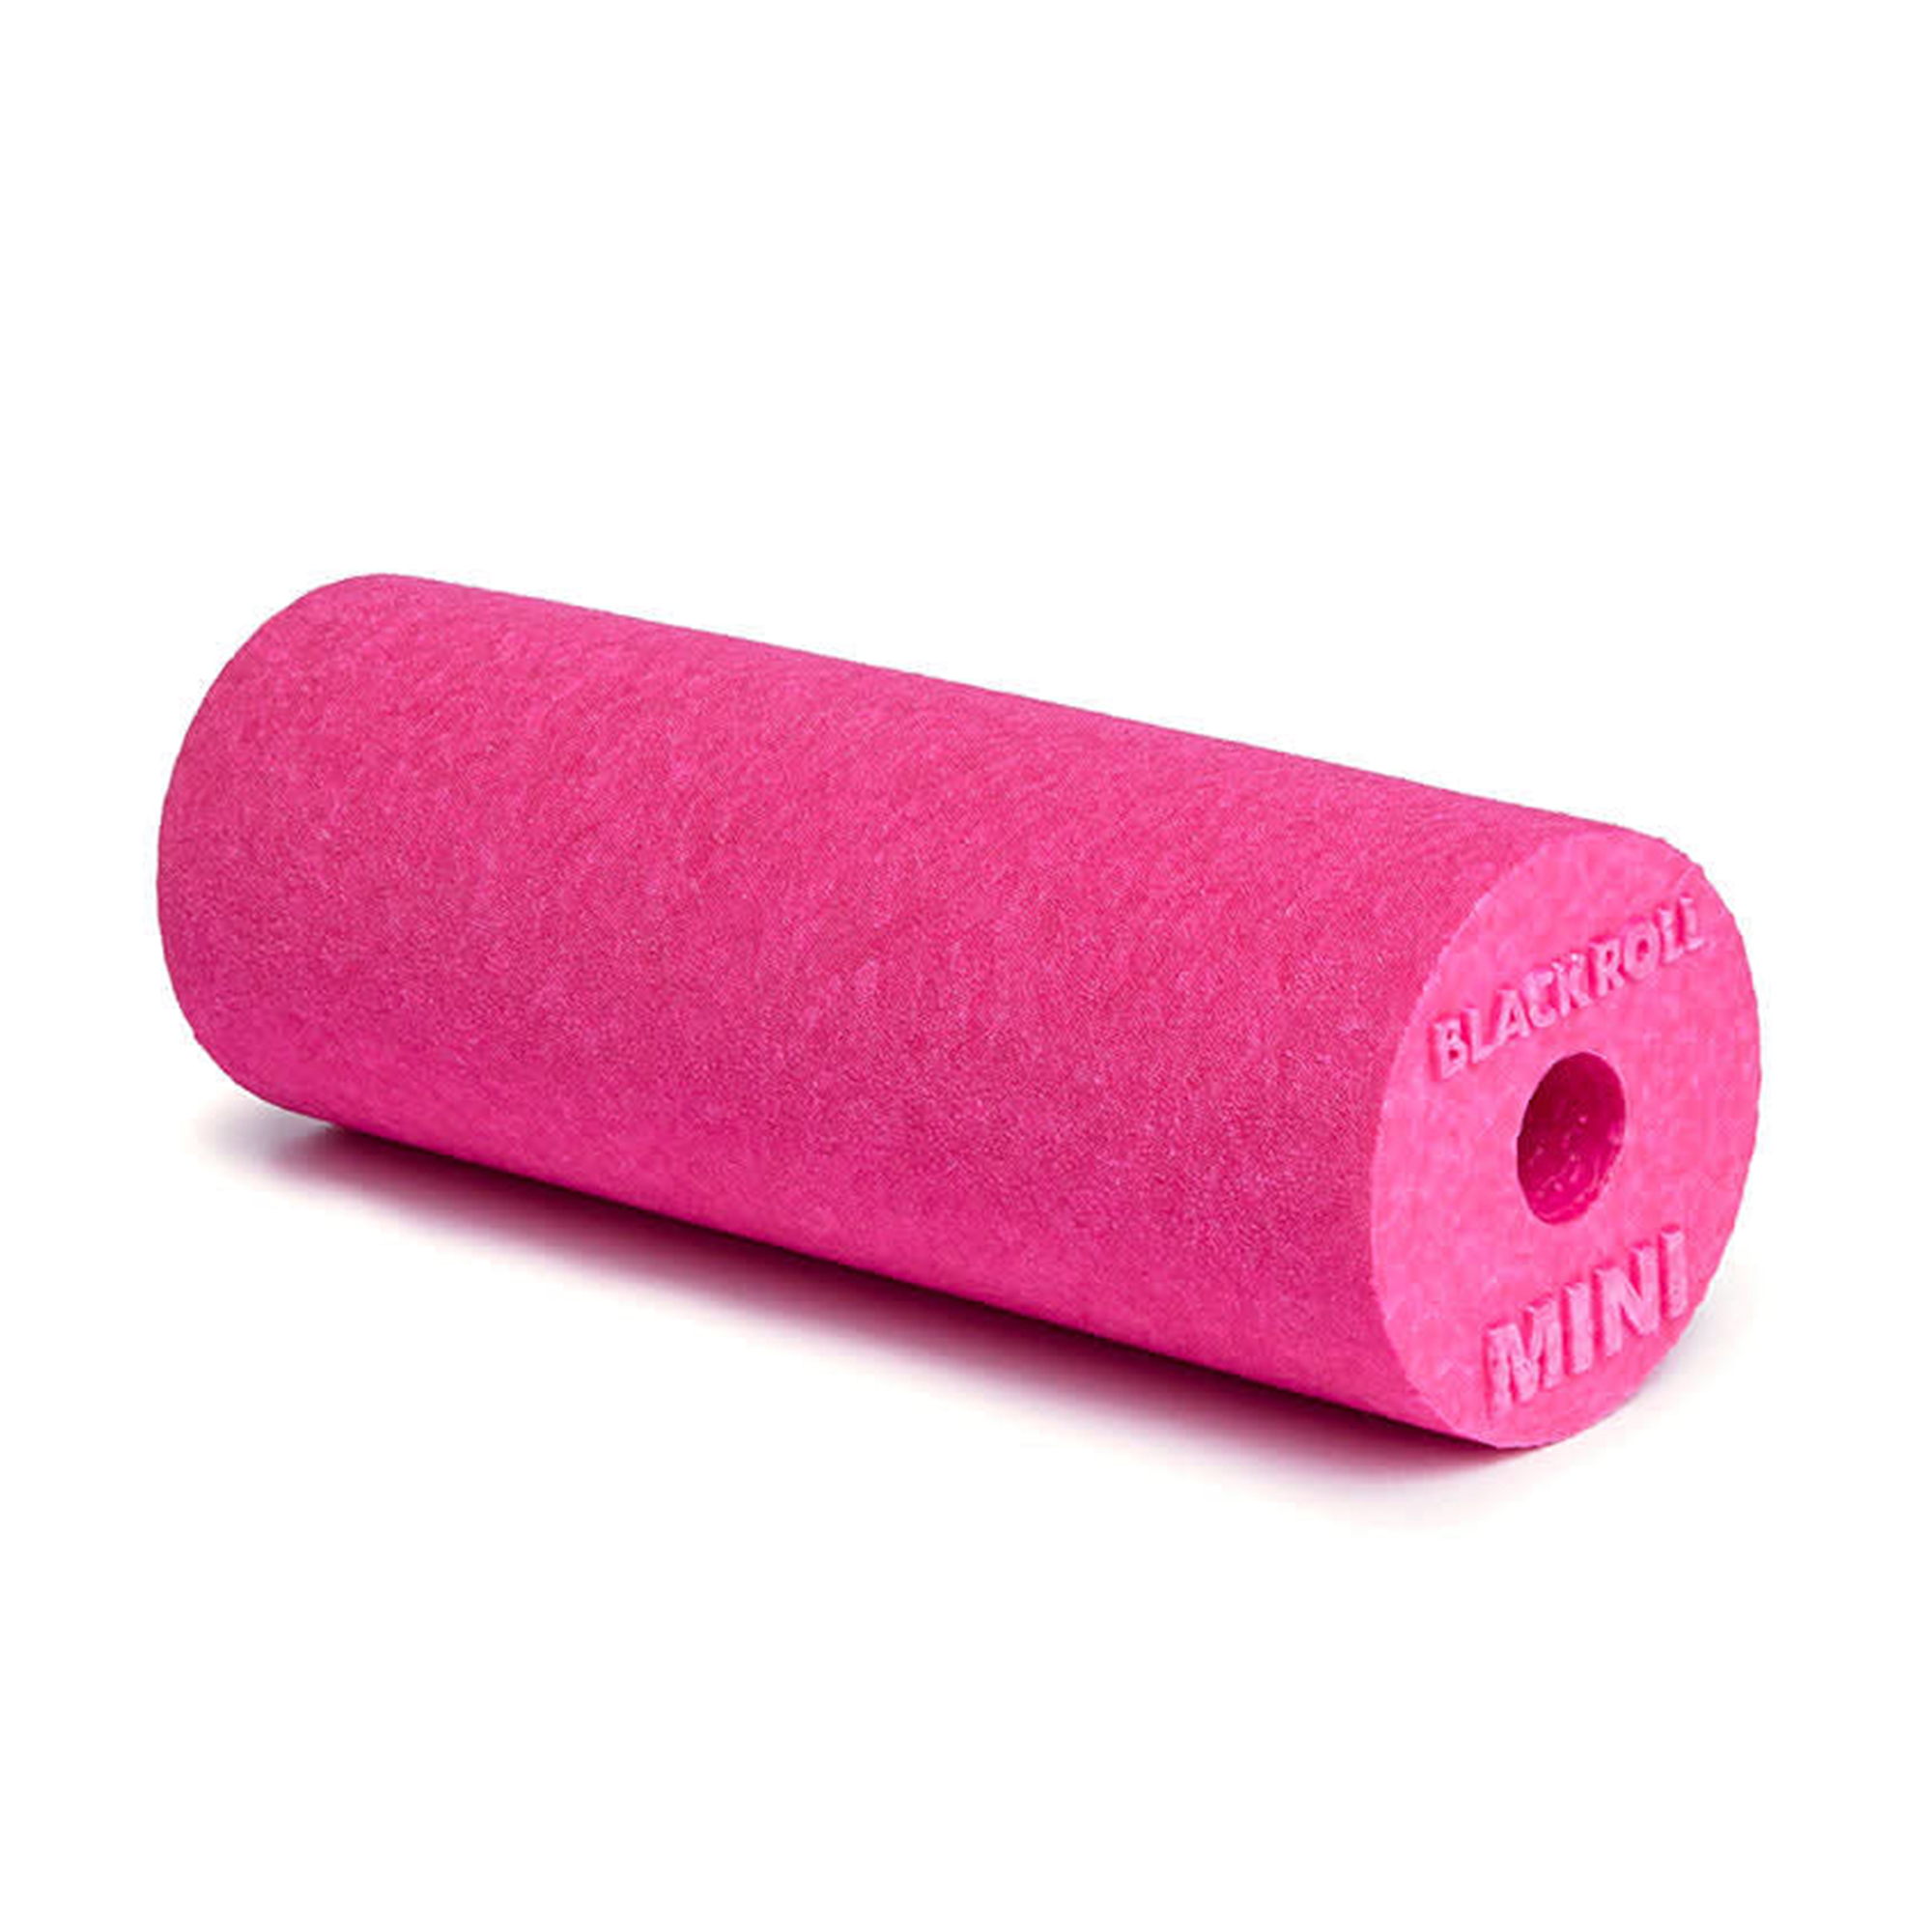 Brug Blackroll Mini Foam Roller Pink - 15 x 6 cm til en forbedret oplevelse